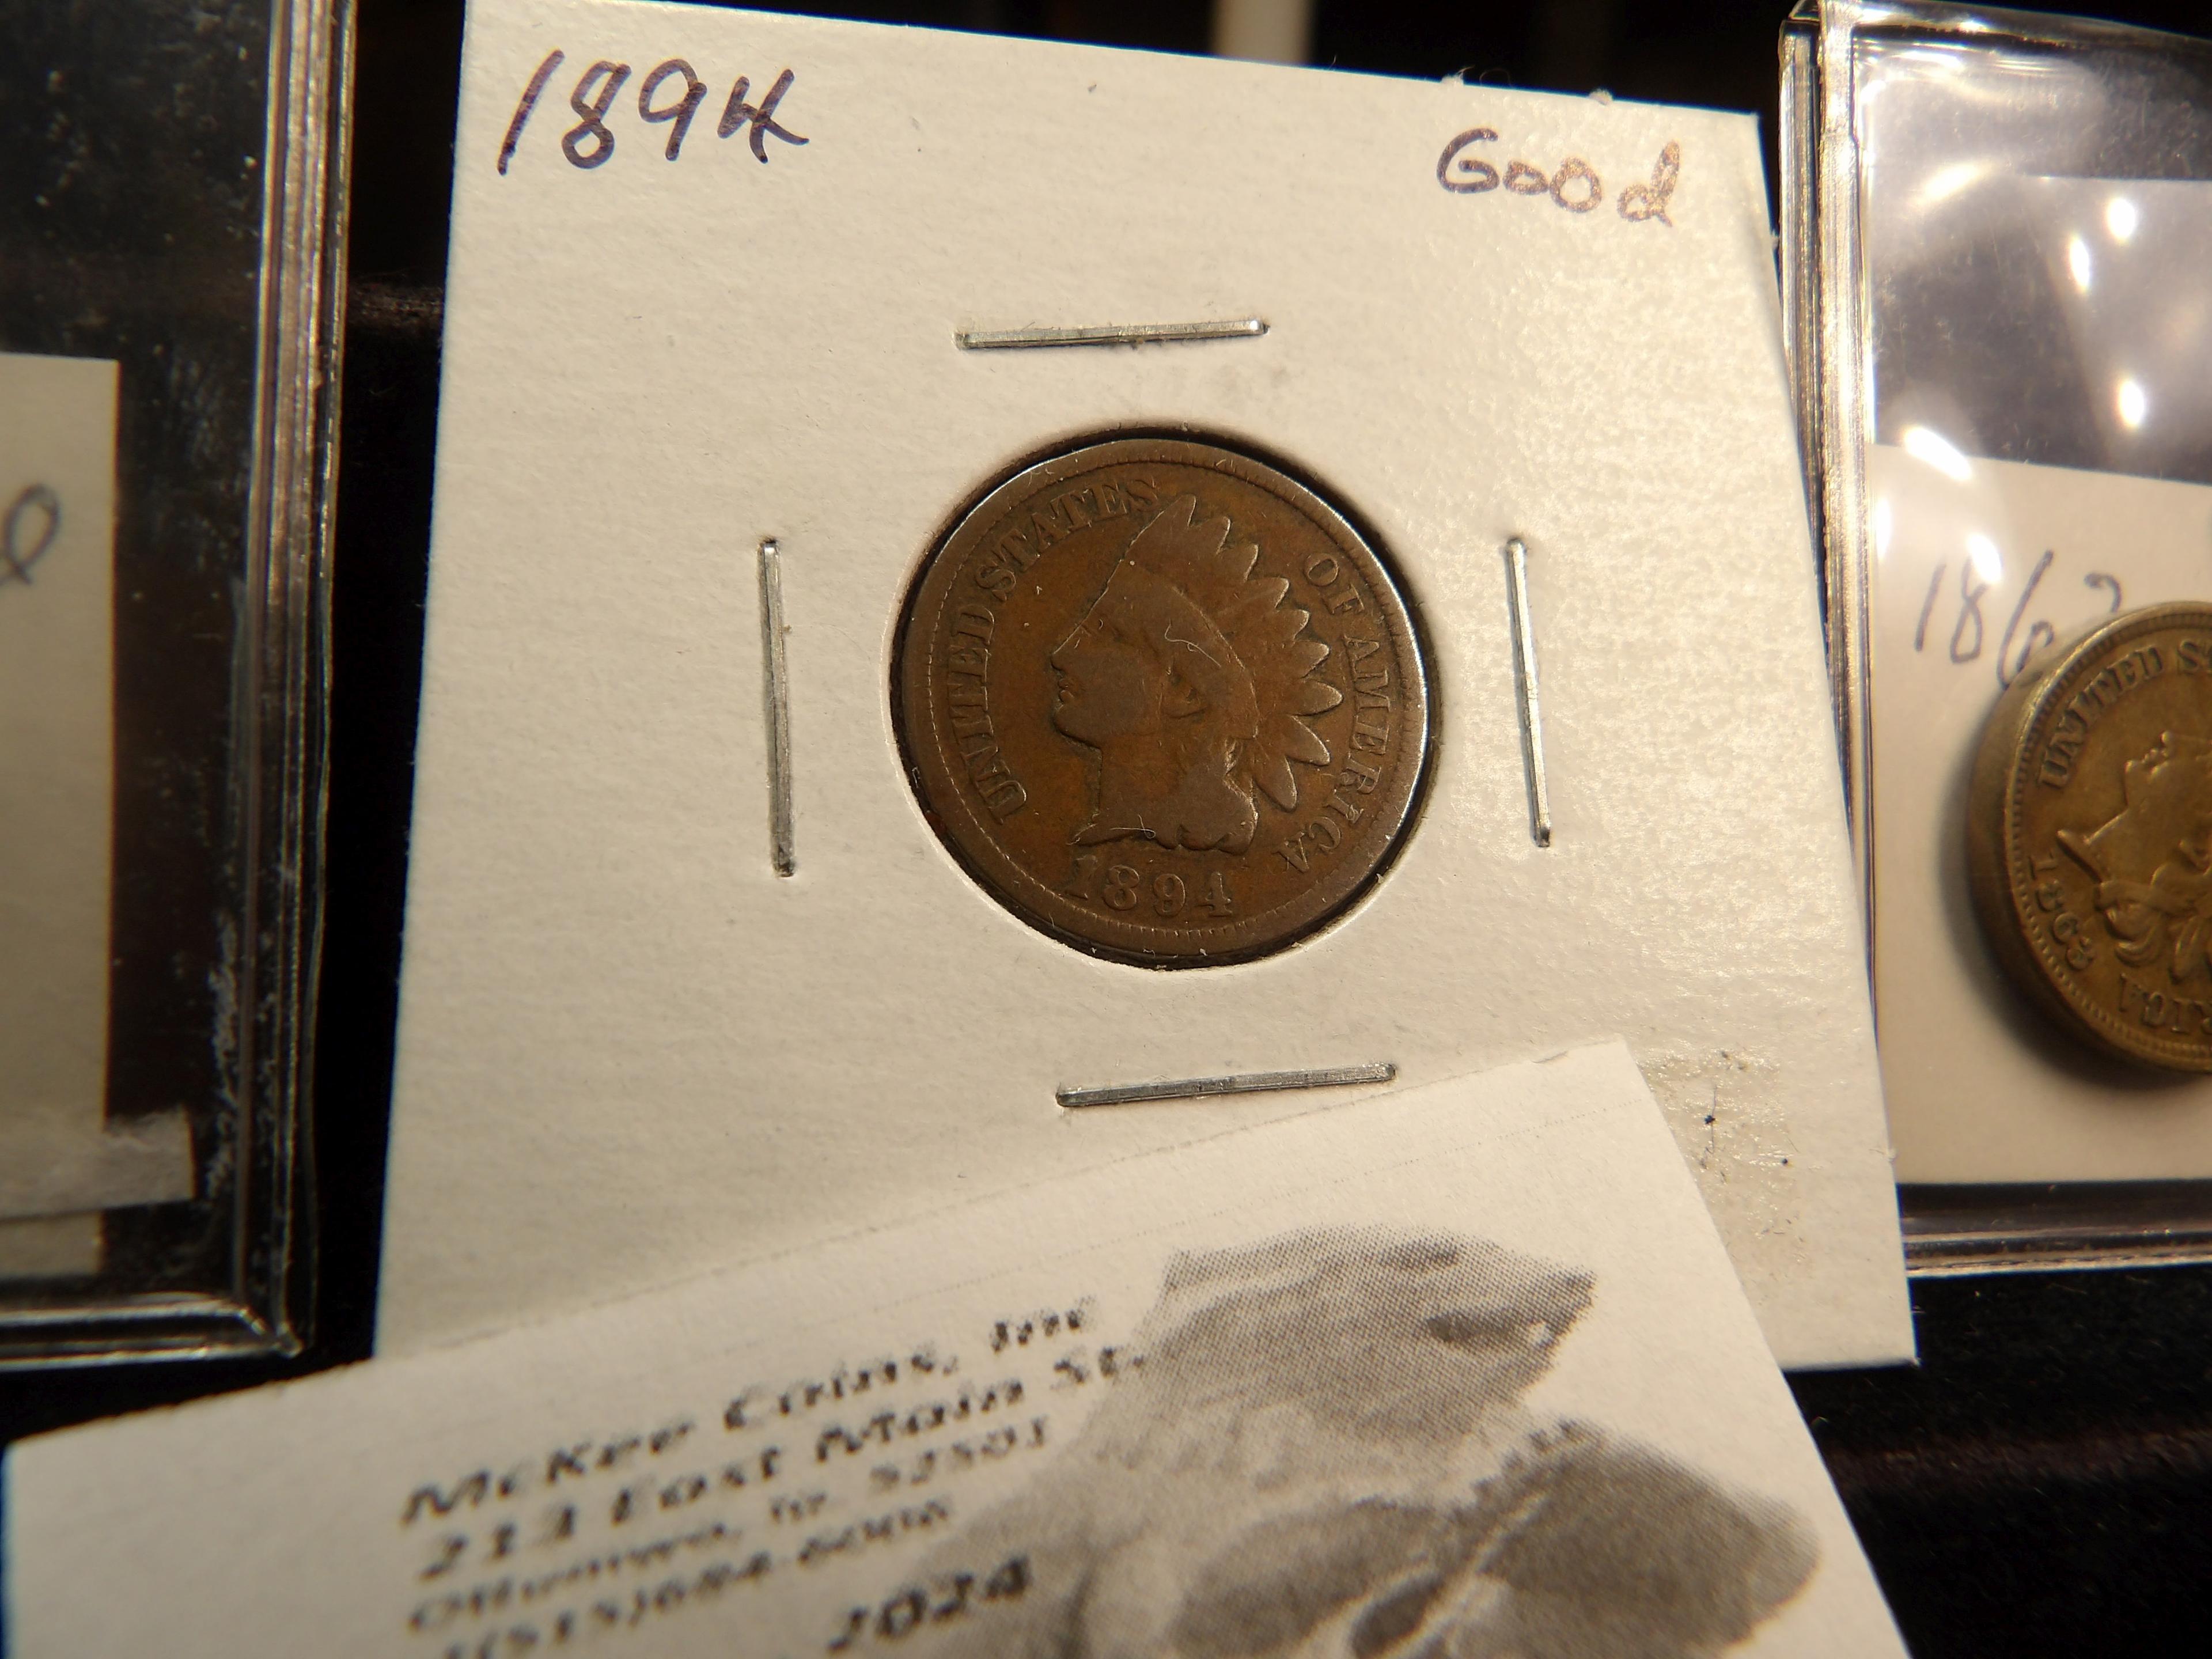 1861, Good,1863 EF; & 1894 Good Indian Head Cents.